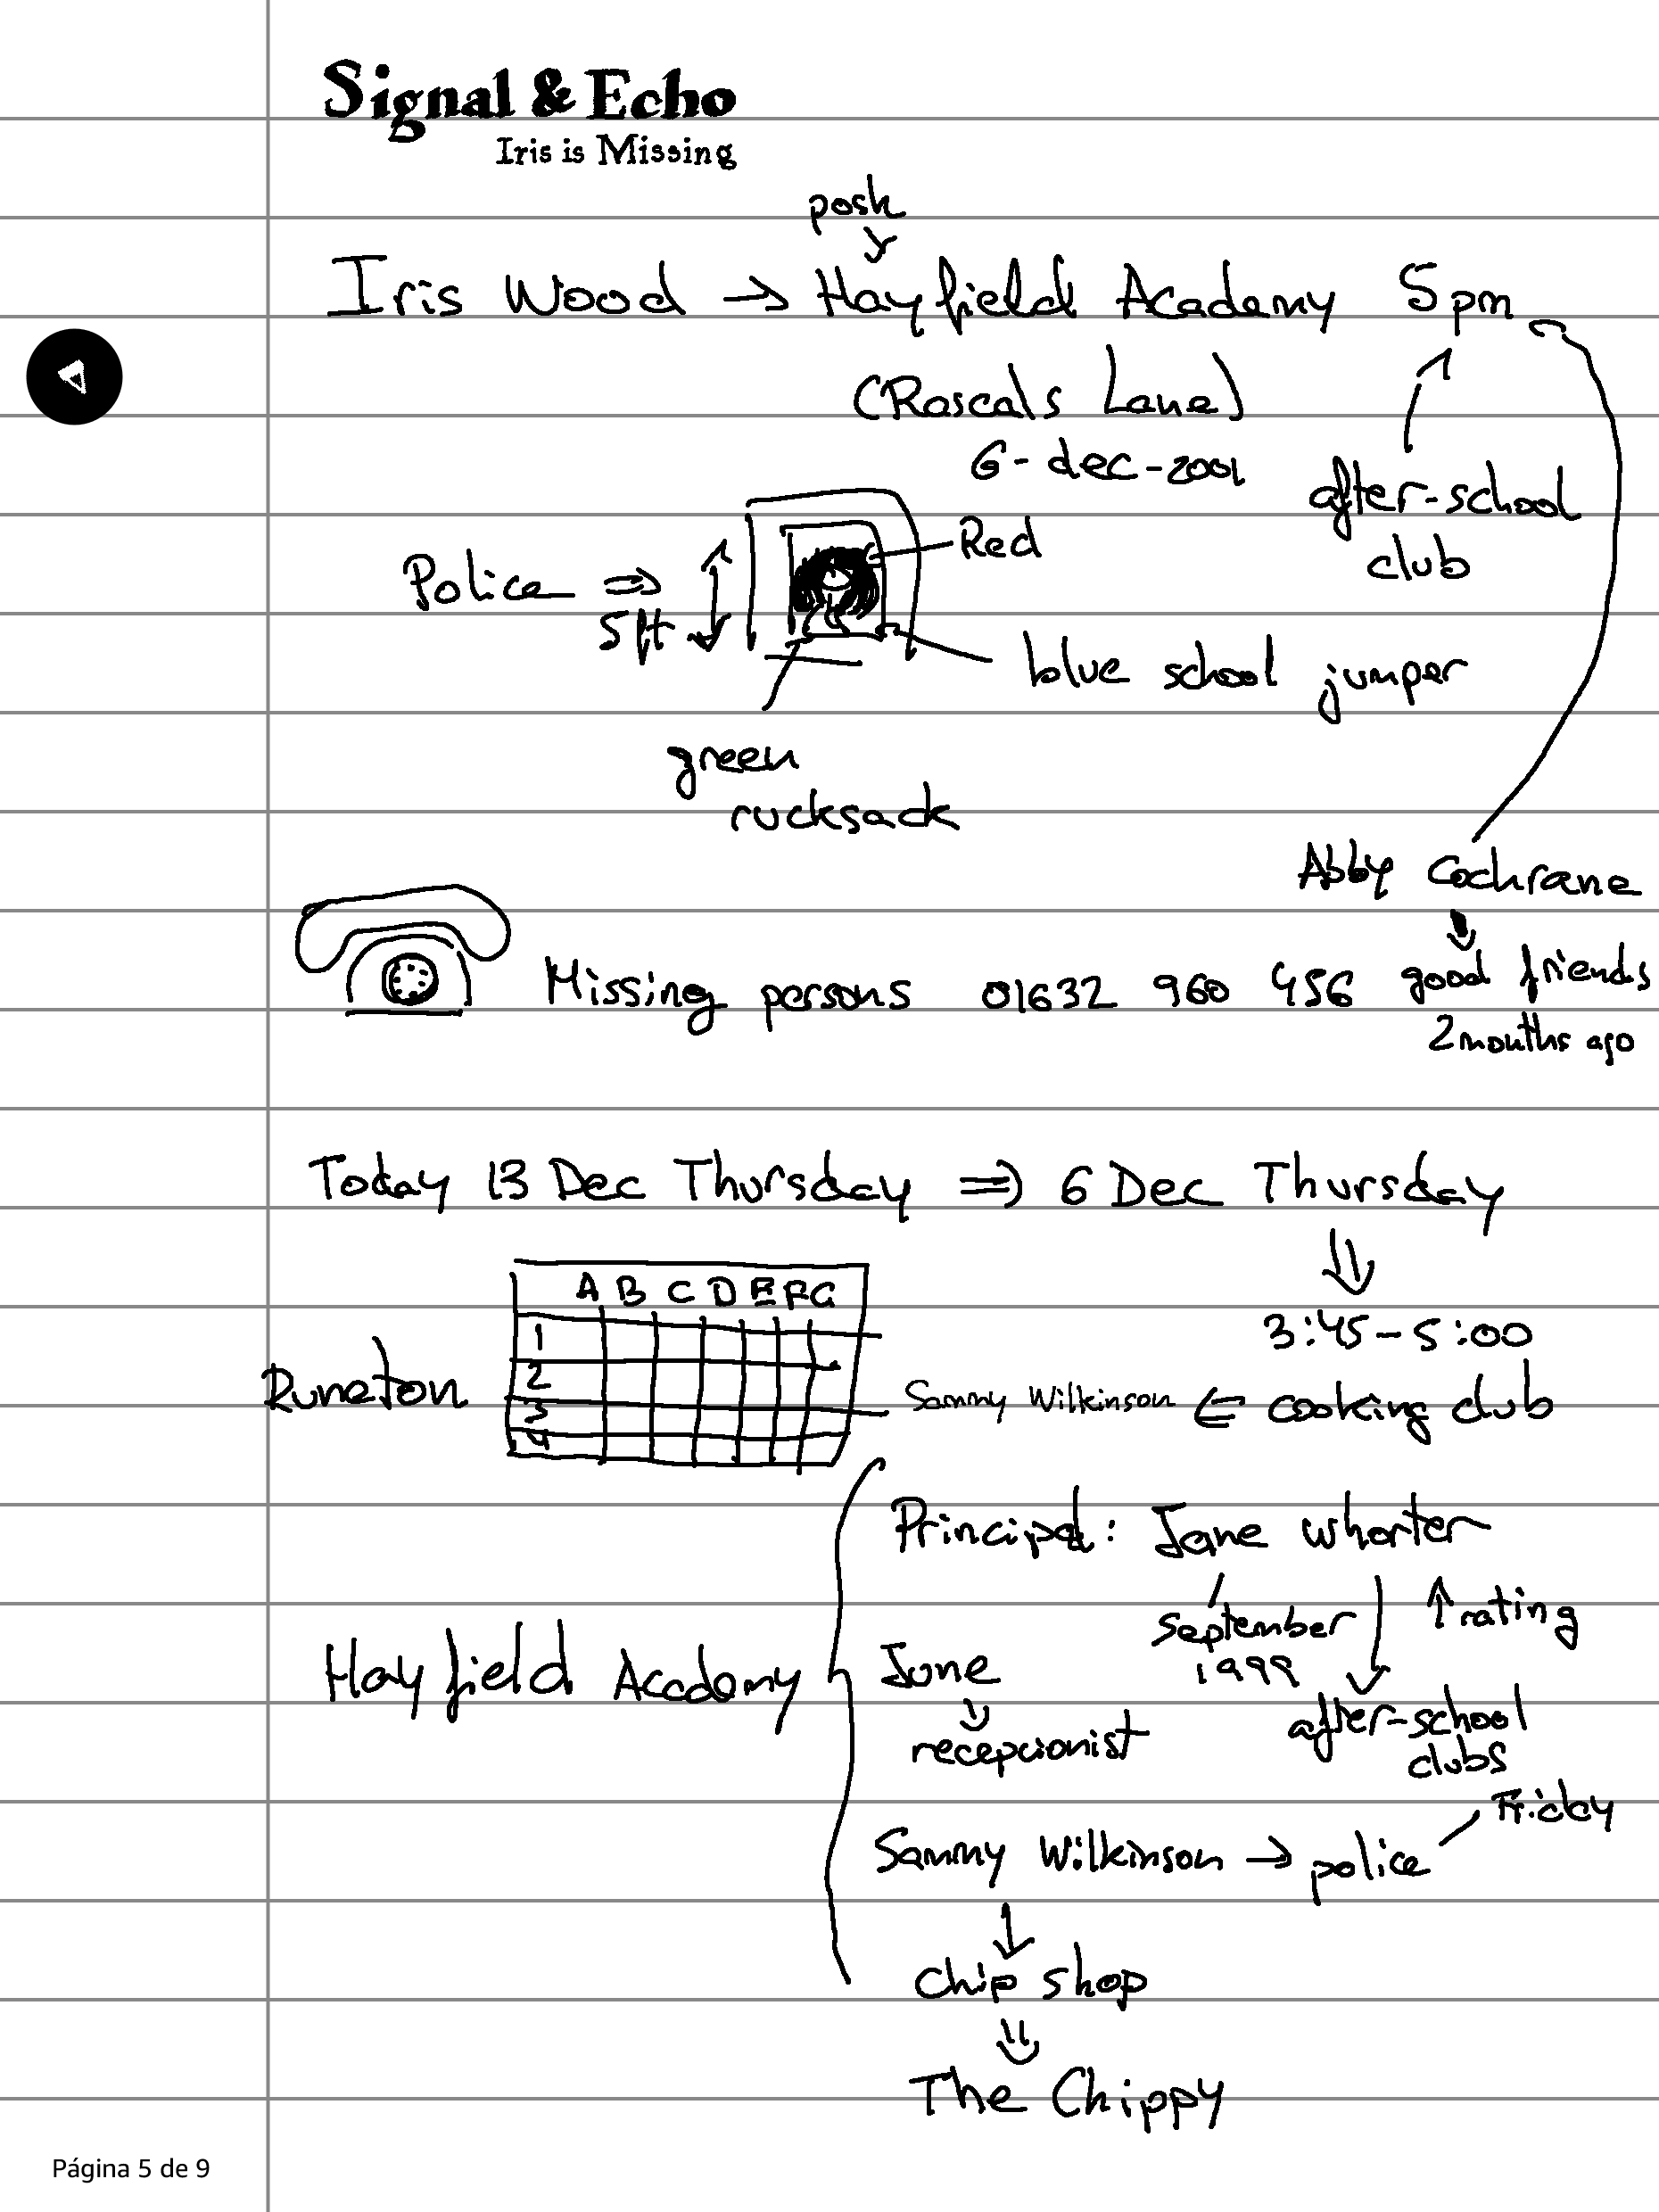 Página de cuaderno con las anotaciones que tomé sobre la investigación durante el juego.